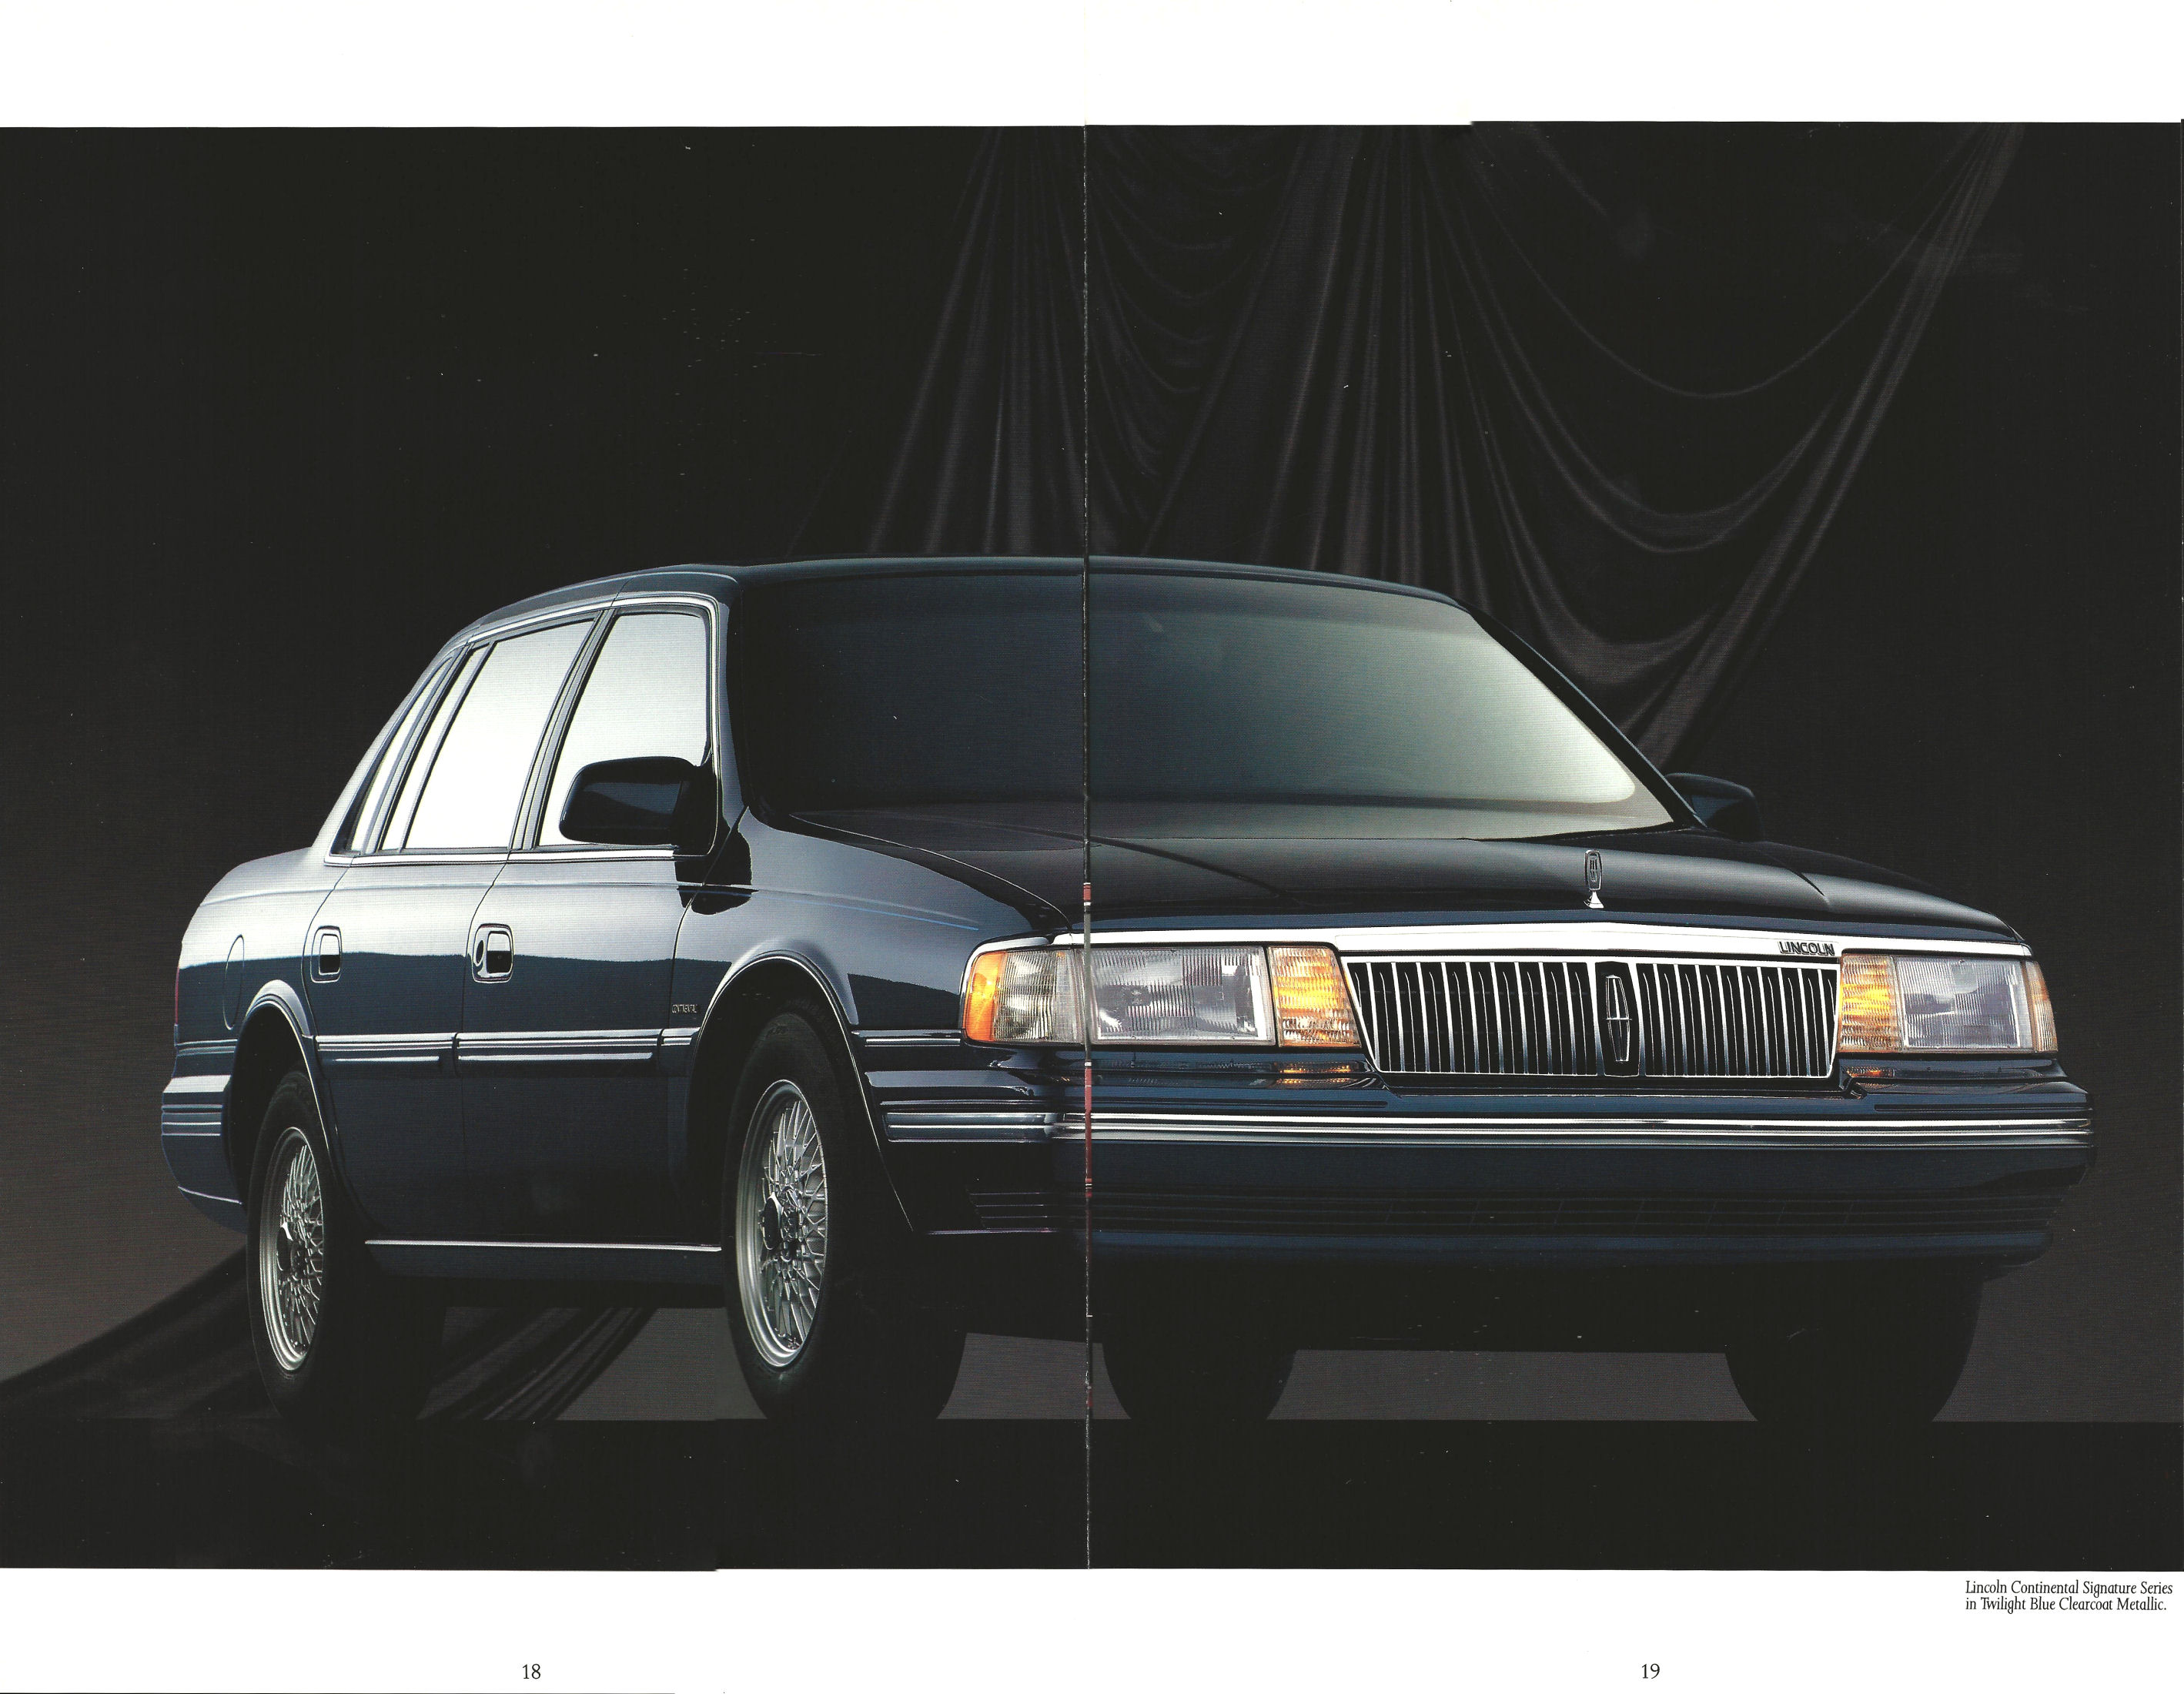 1990_Lincoln_Continental_Prestige-18-19